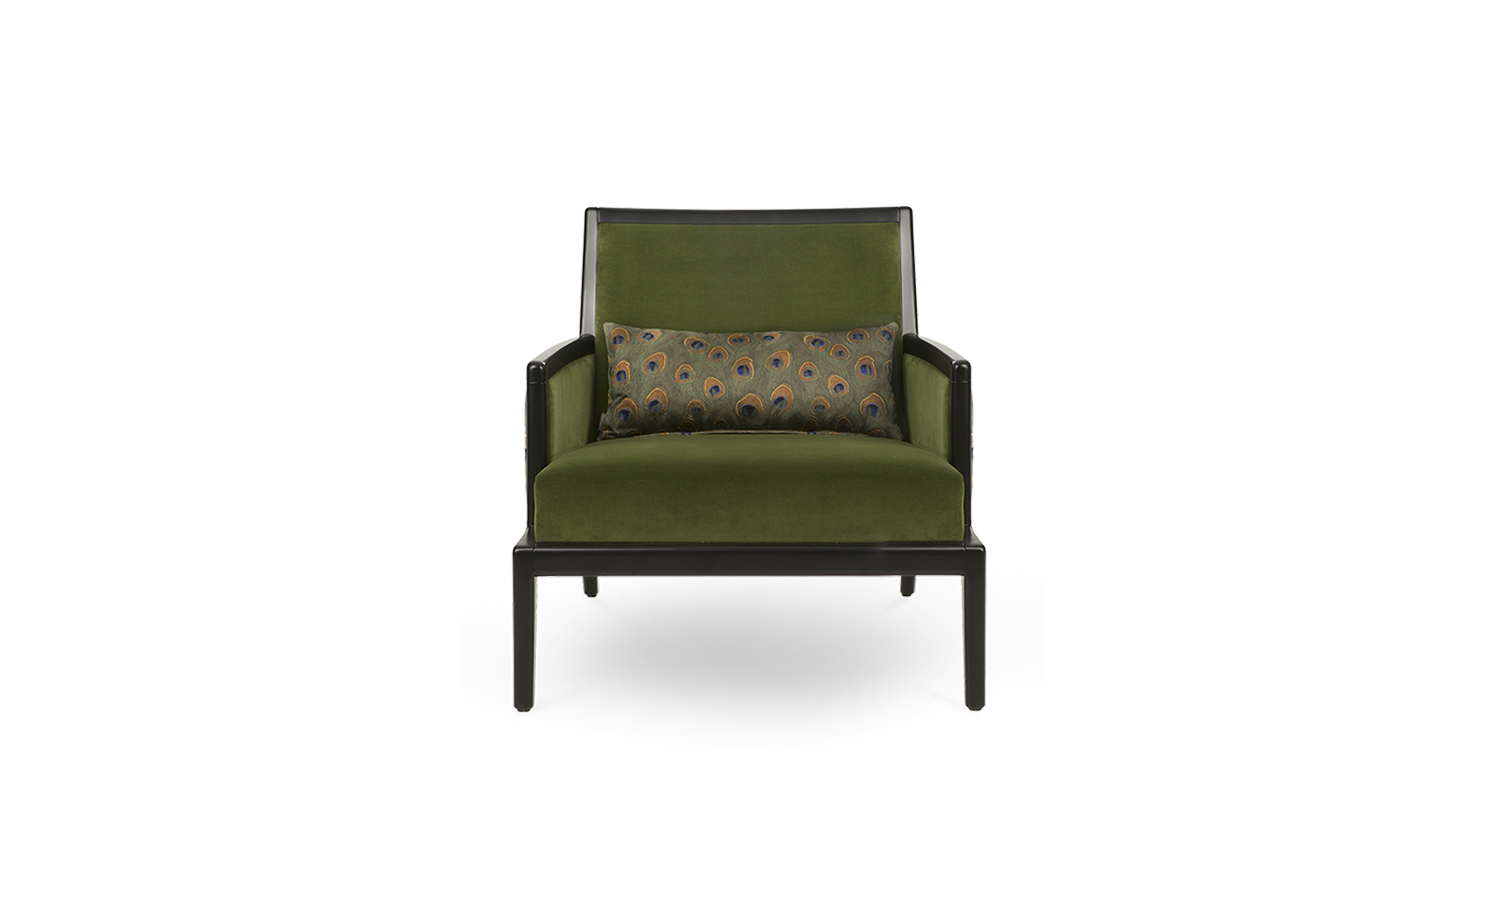 w/ armrests